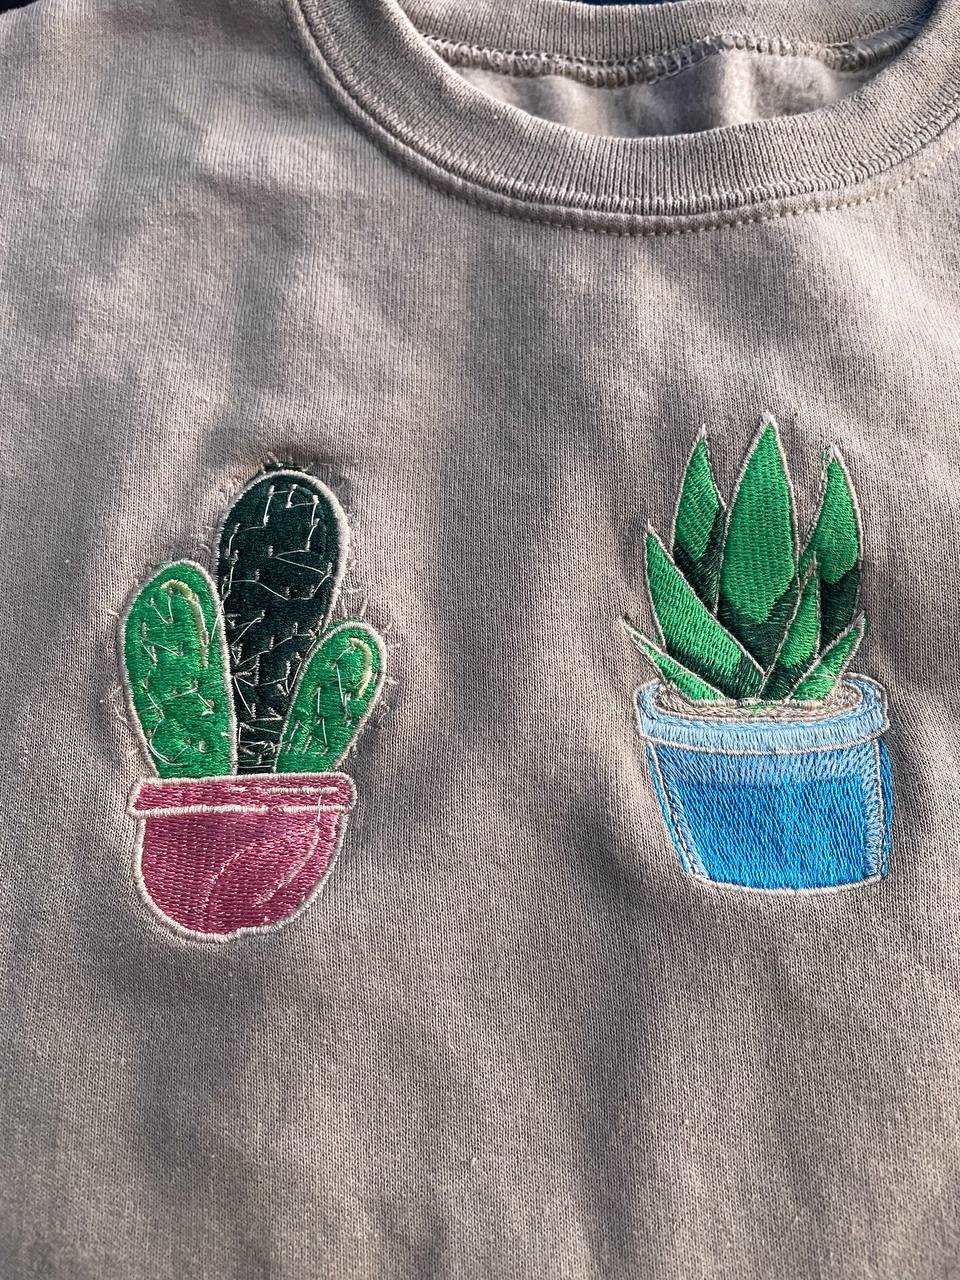 Cactus Sweater